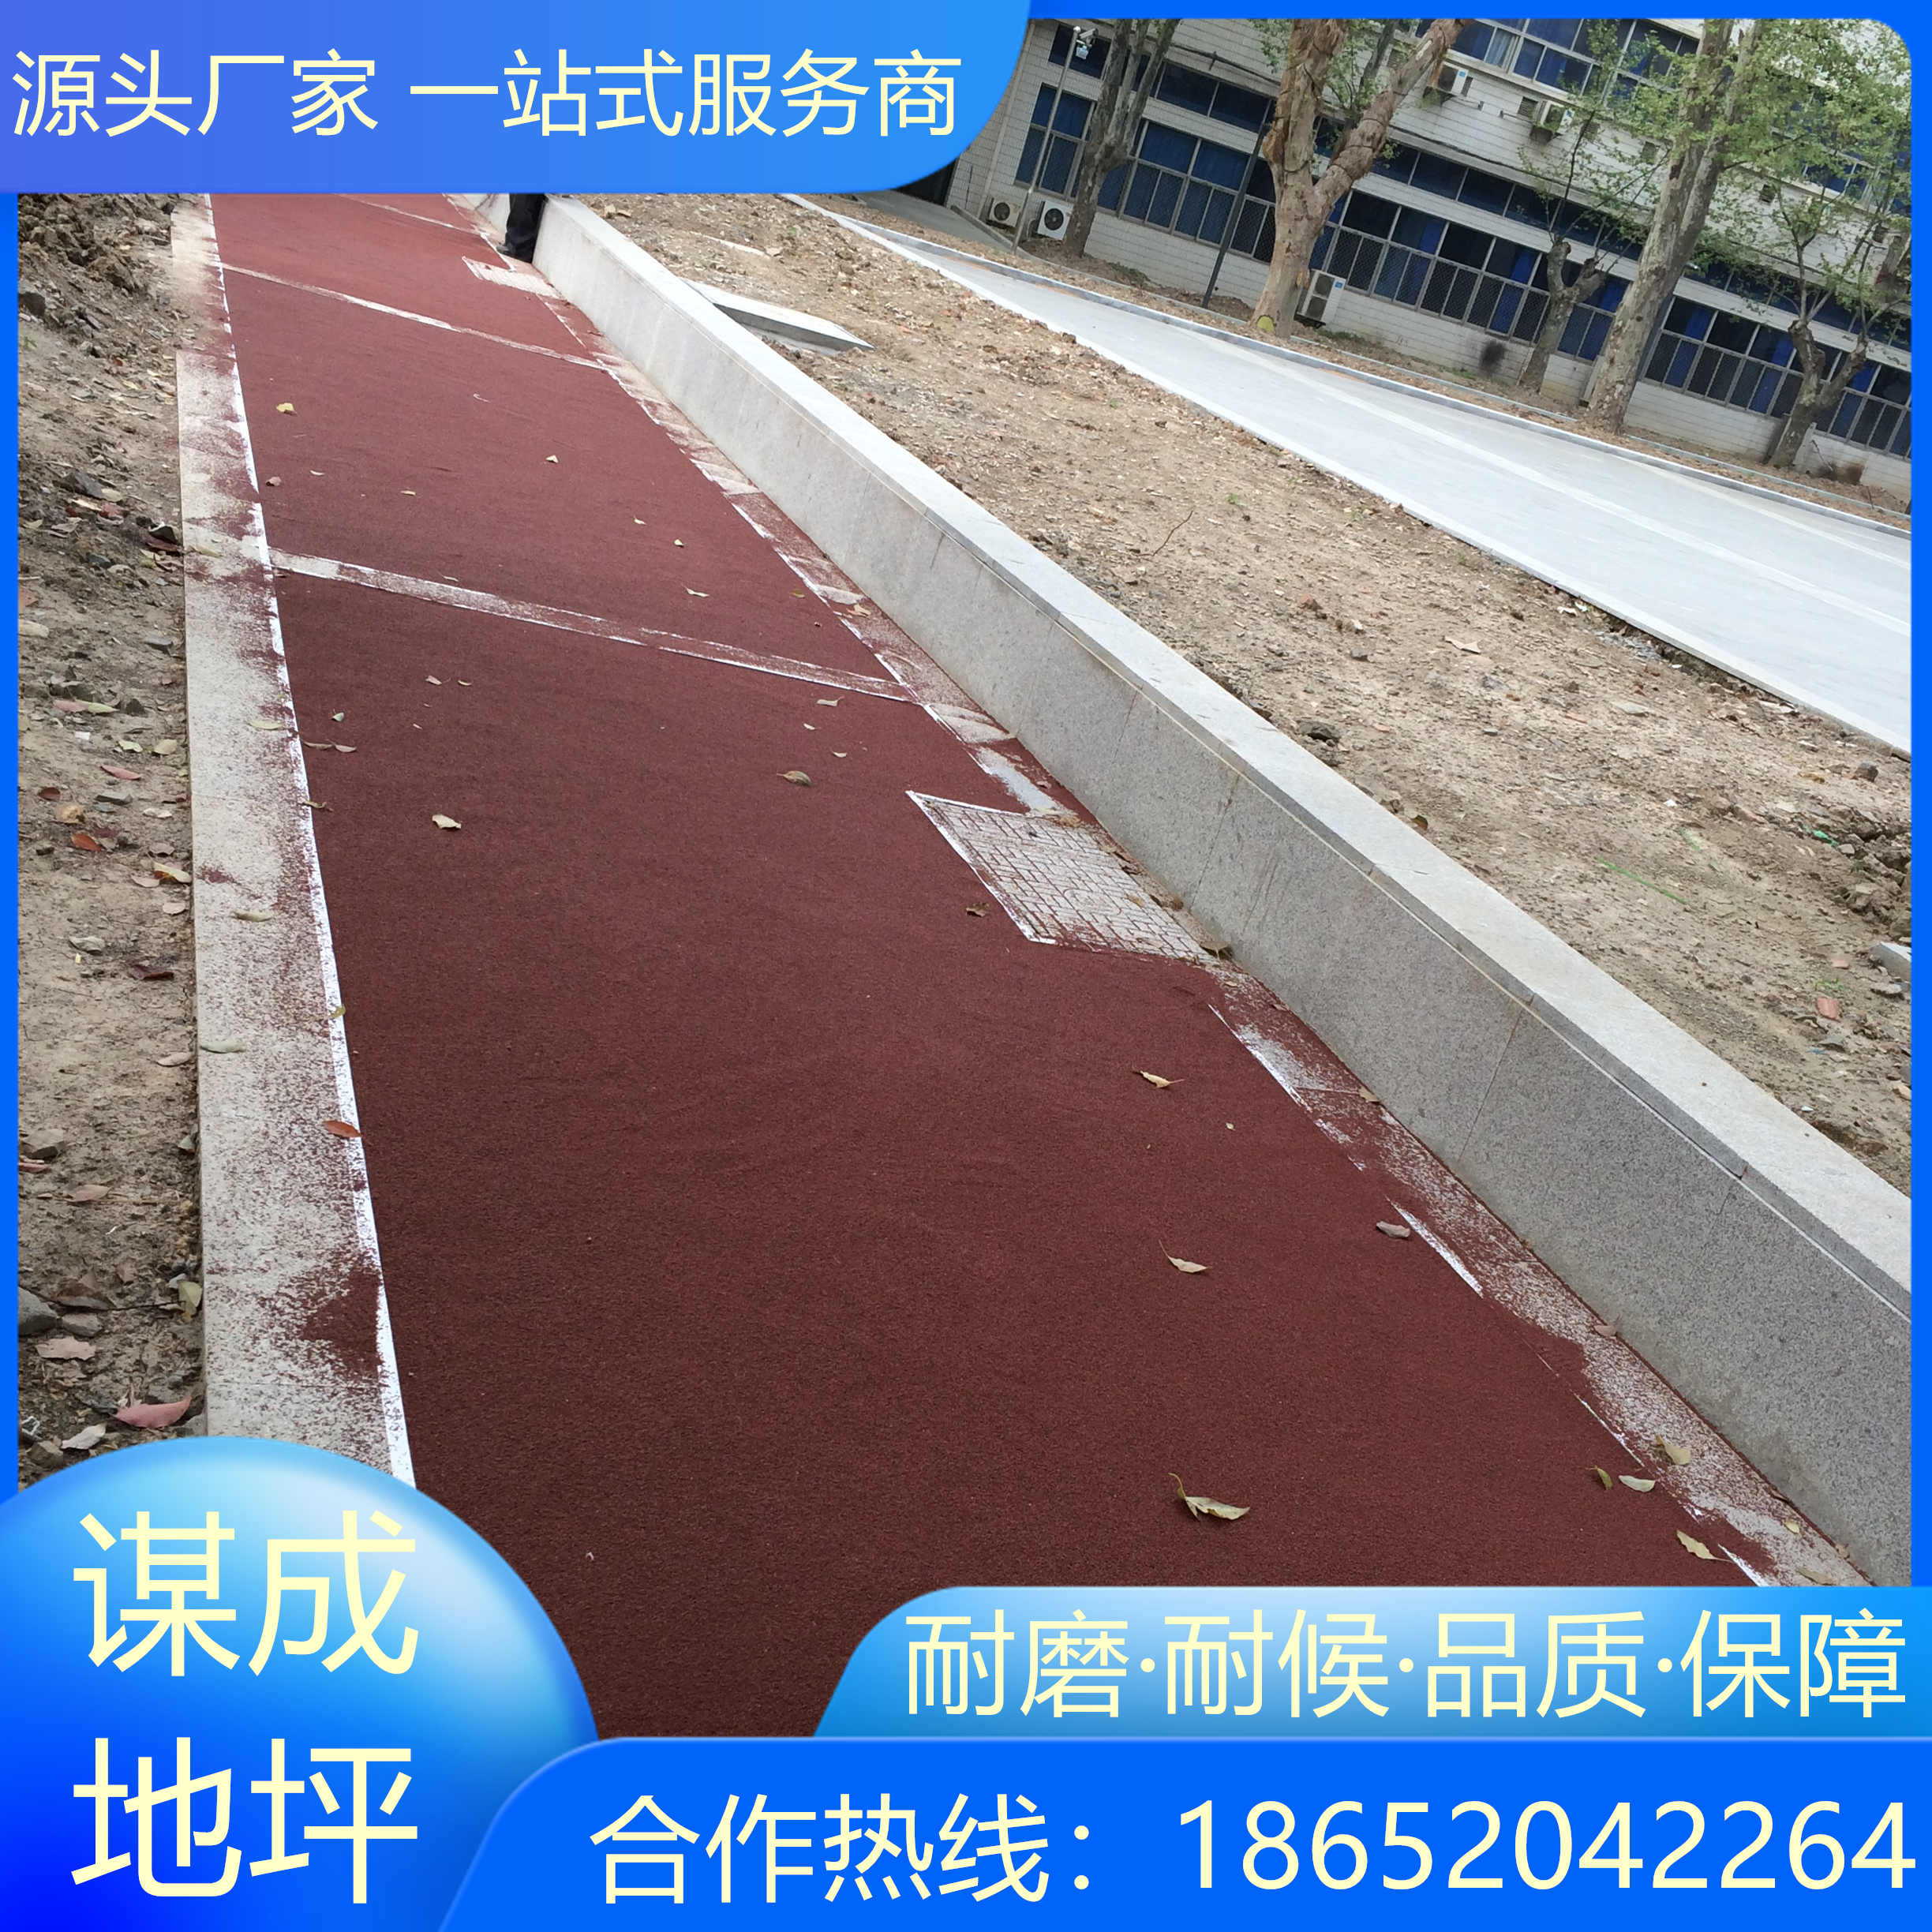 江苏南京公路彩色防滑路面施工公司和厂家